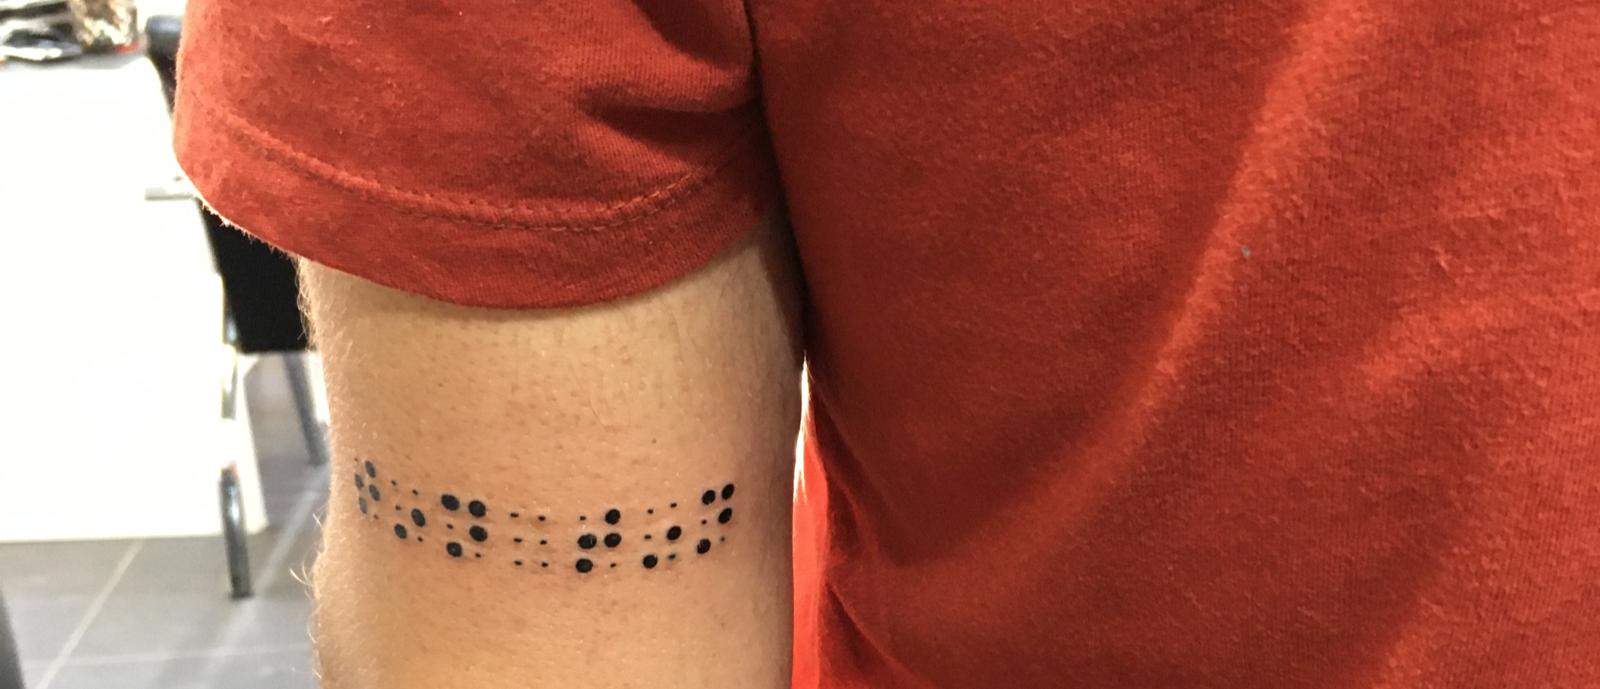 Yakın plan çekimde Kol üzerindeki Braille ile dövme olarak yazılmış tın tın yazısı görülmekte.